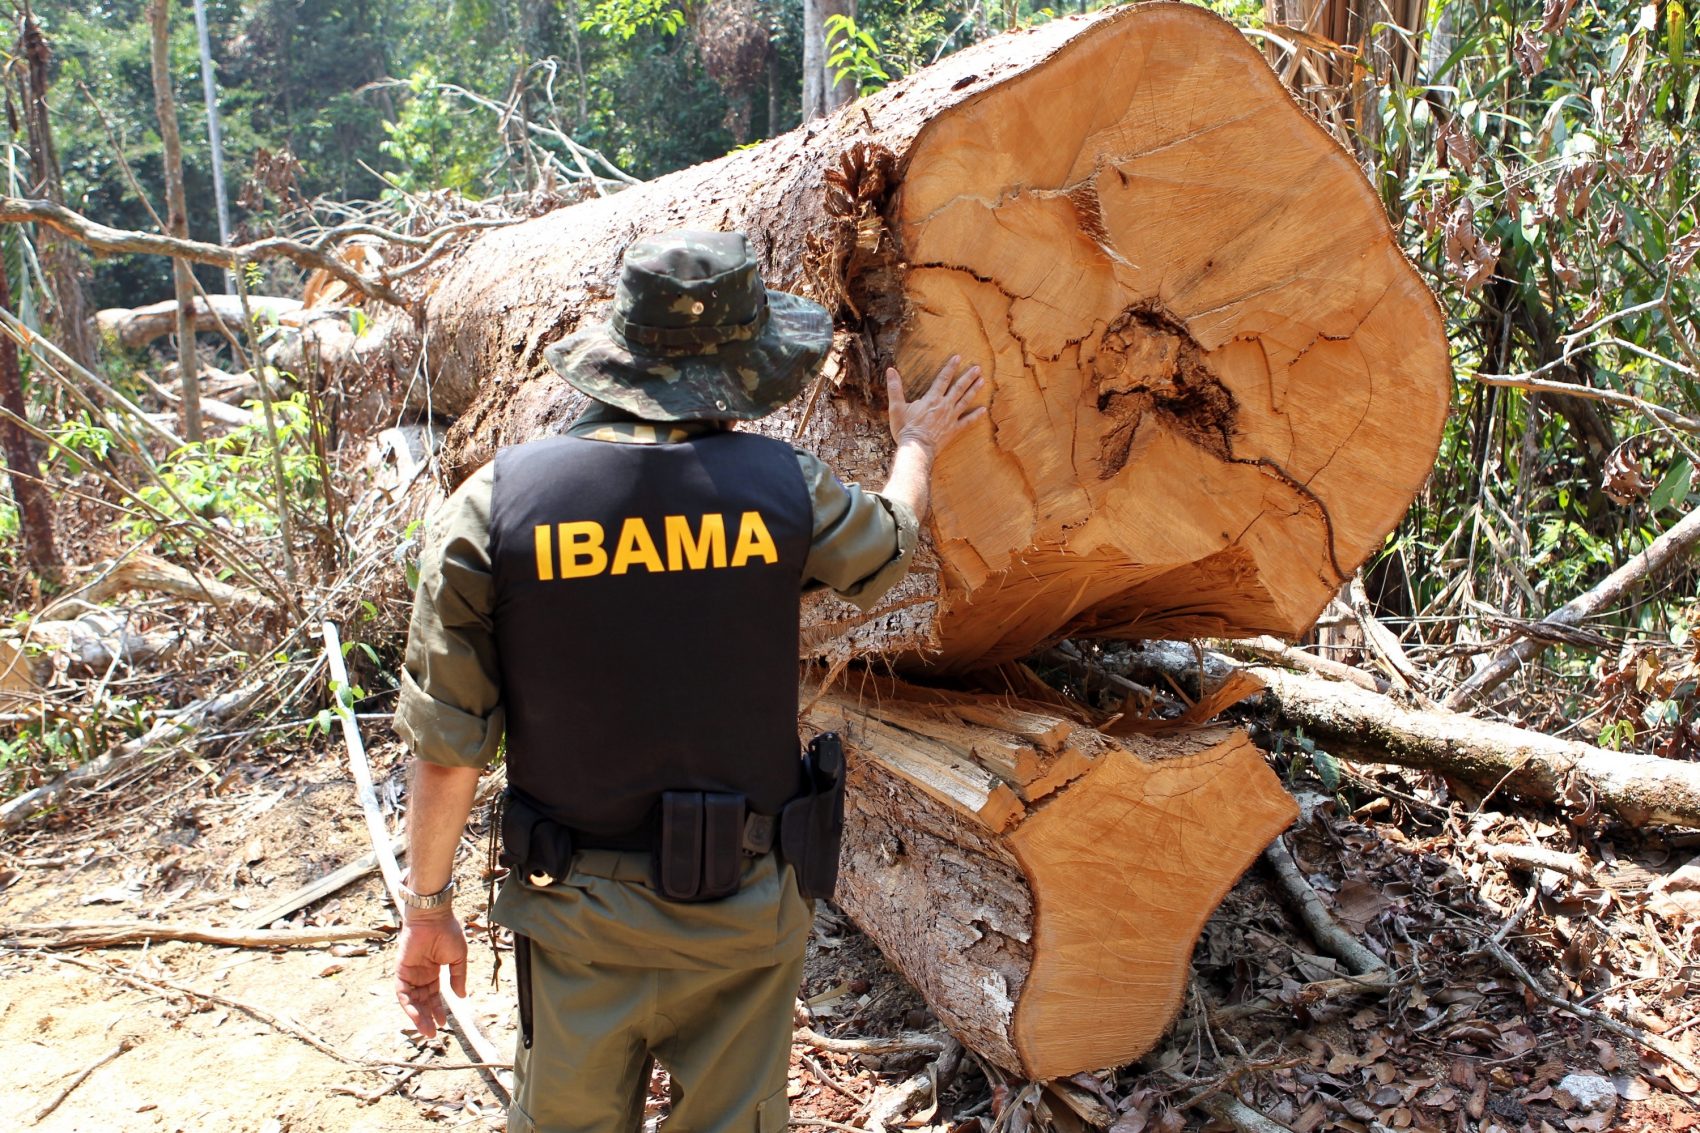 Oficial do Ibama inspeciona árvore cortada no maior esquema de desmatamento ilegal, grilagem de terras e trabalho escravo do país, descoberto pela Operação Rios Voadores